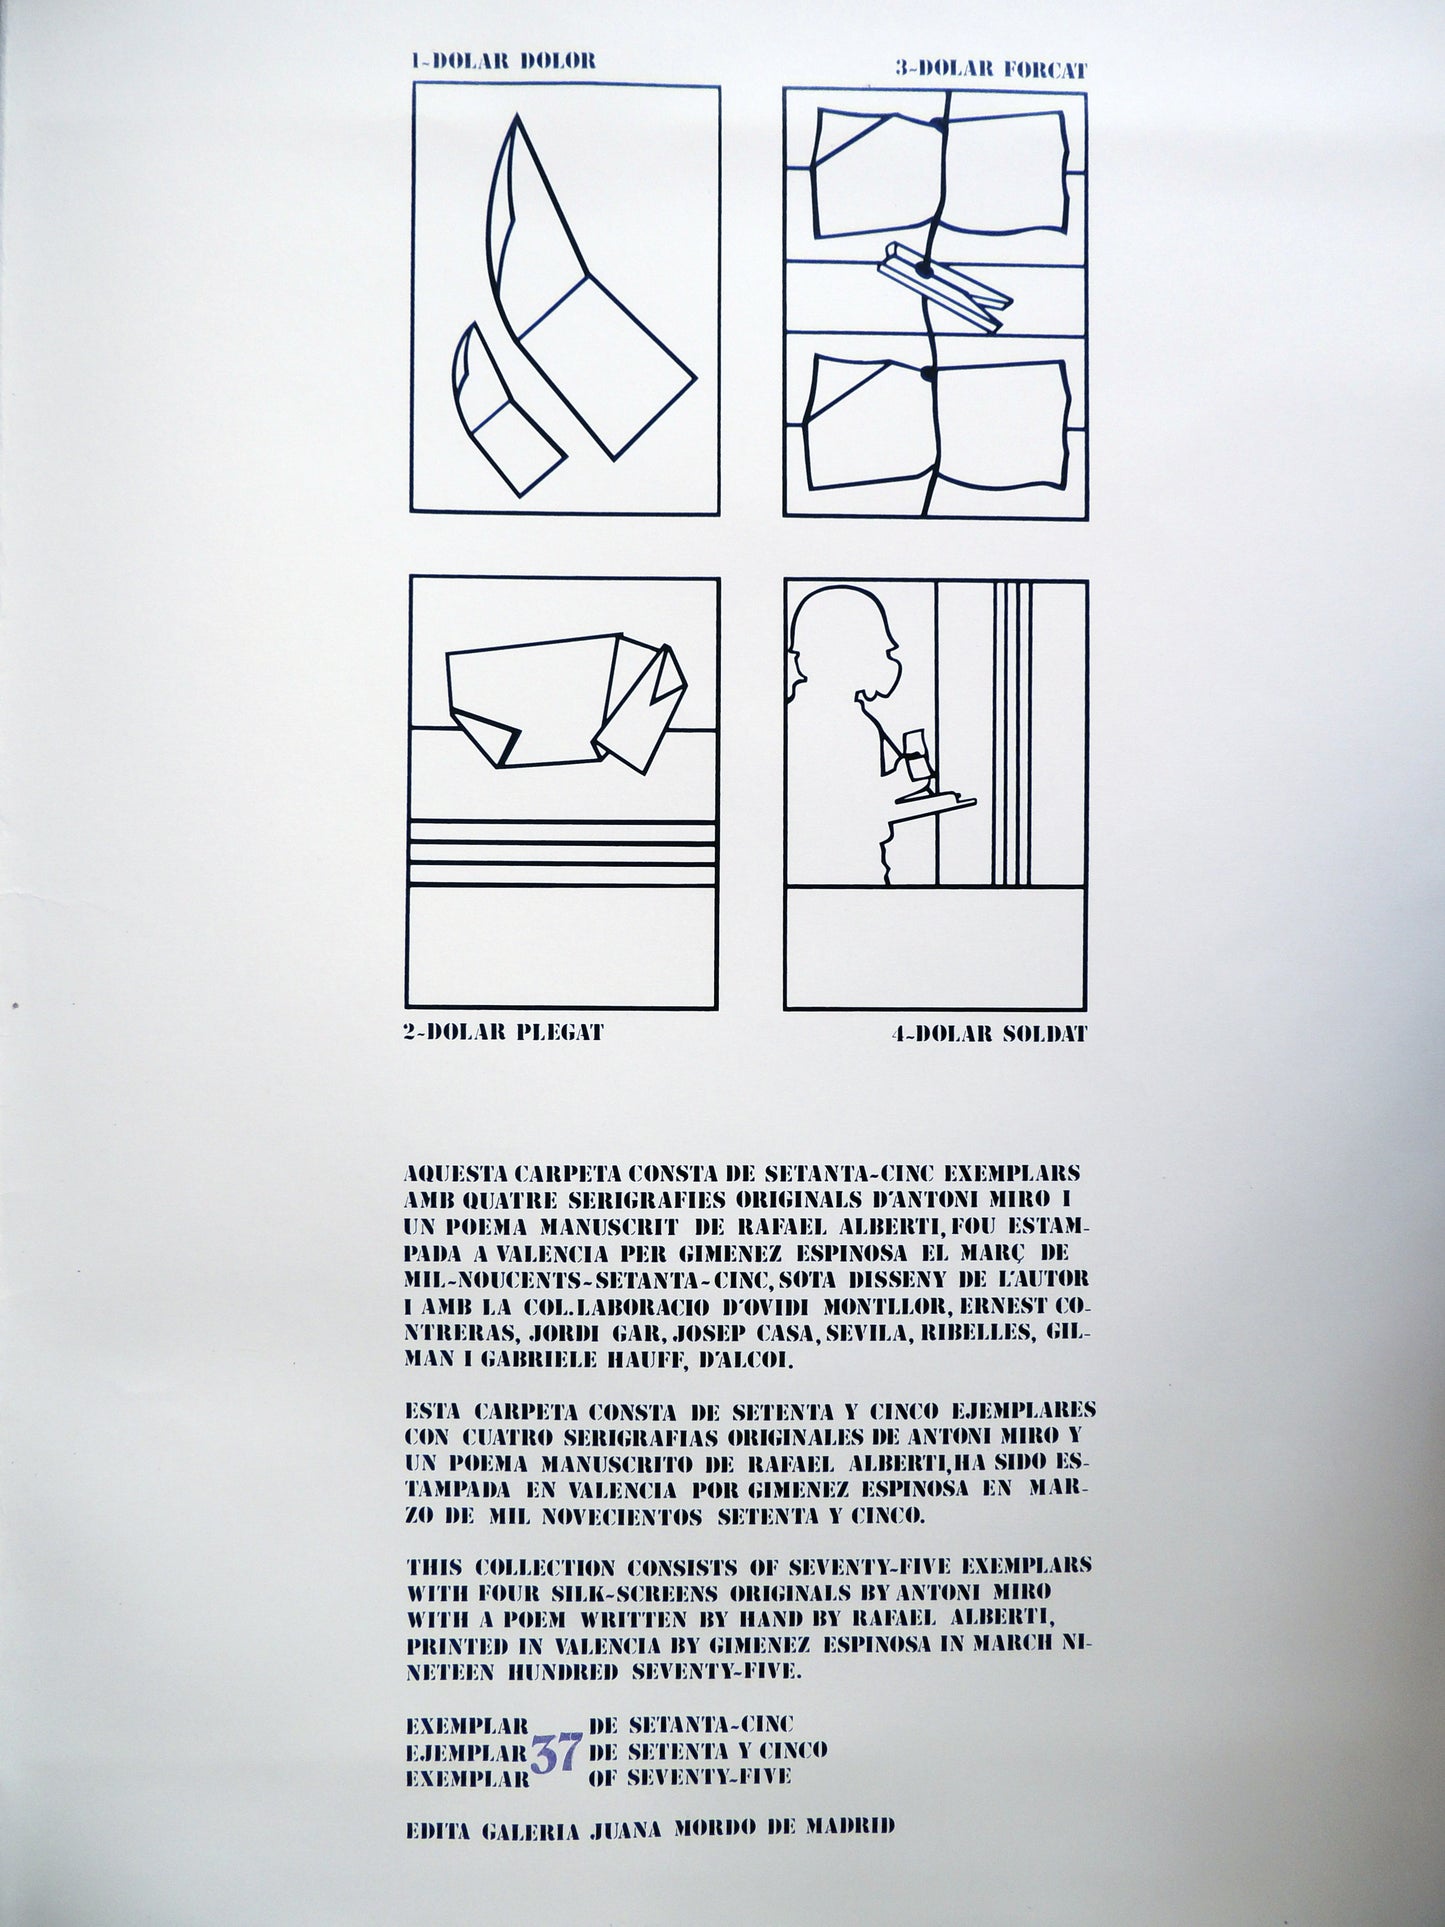 Serigrafía de edición limitada arte contemporáneo Antoni Miró Serie Dólar detalle Gaudifond